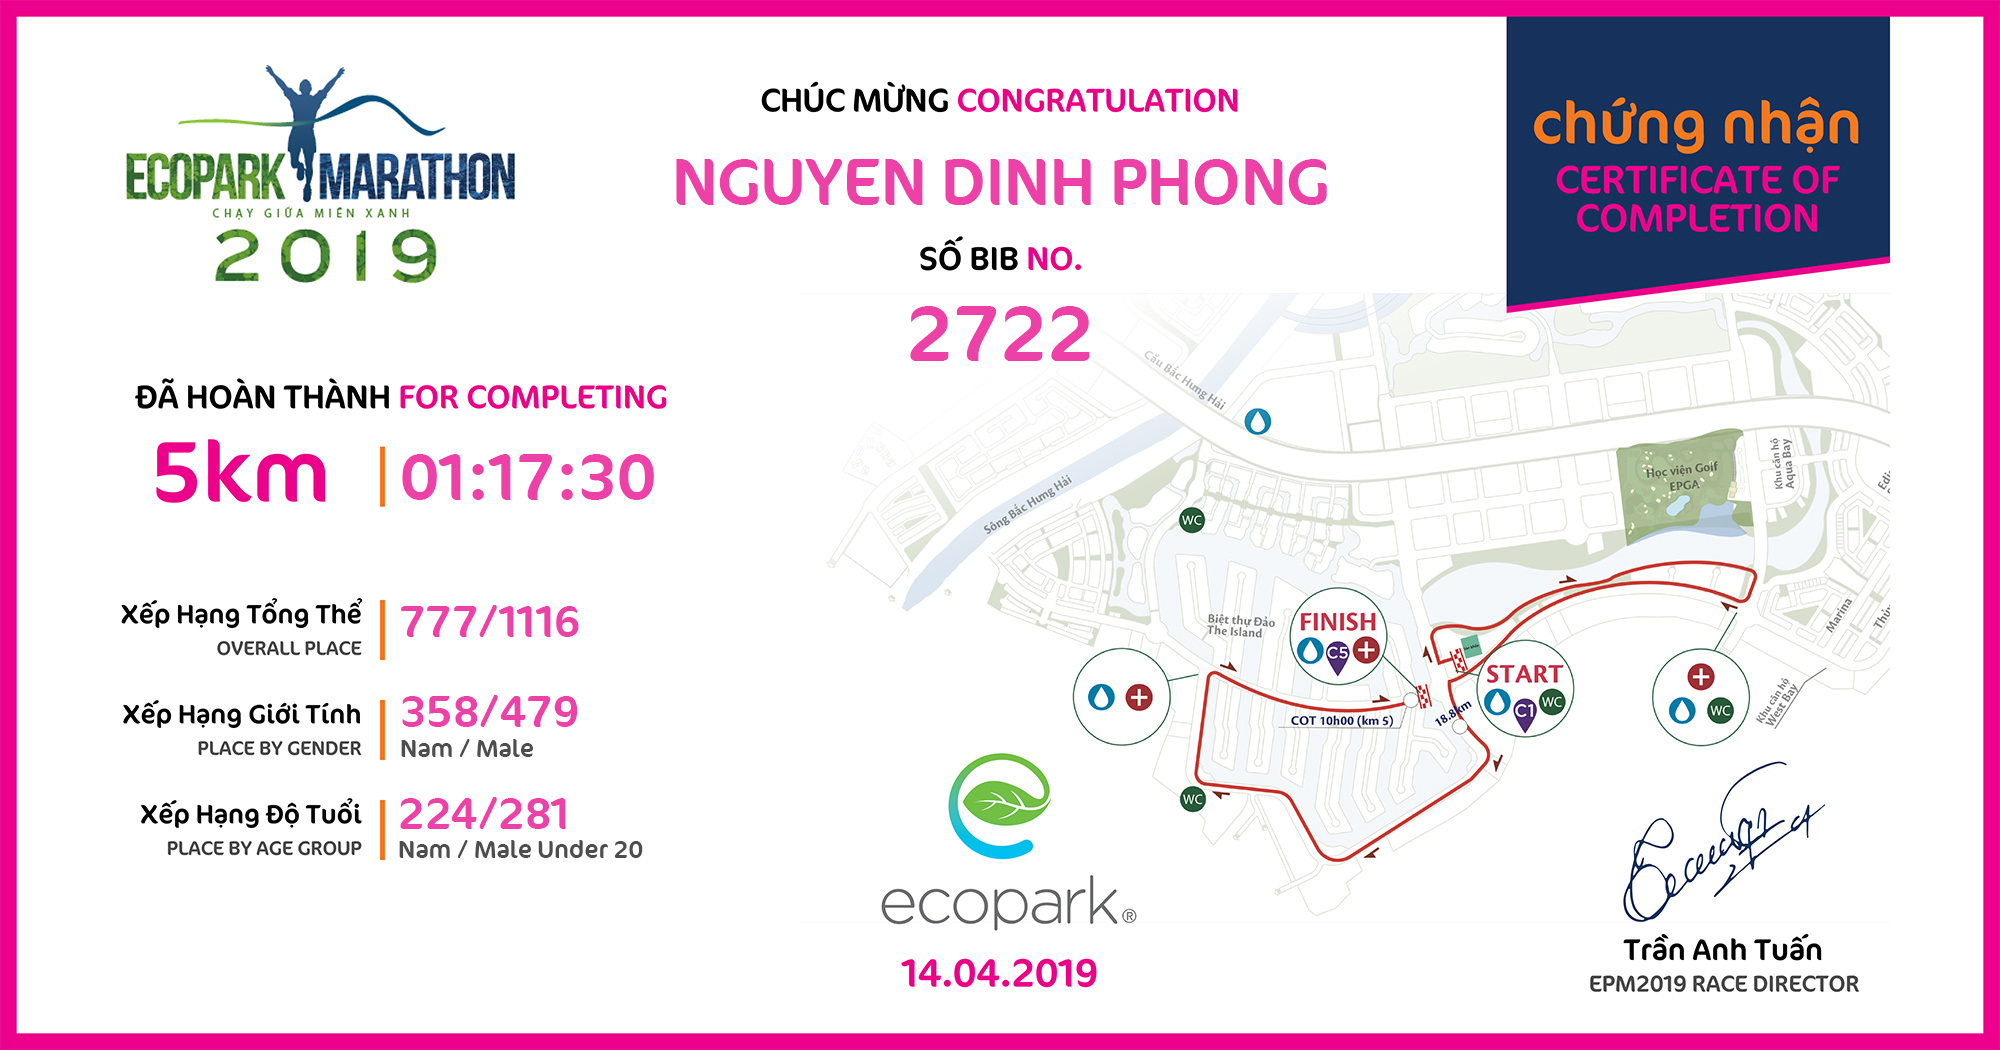 2722 - Nguyen Dinh Phong